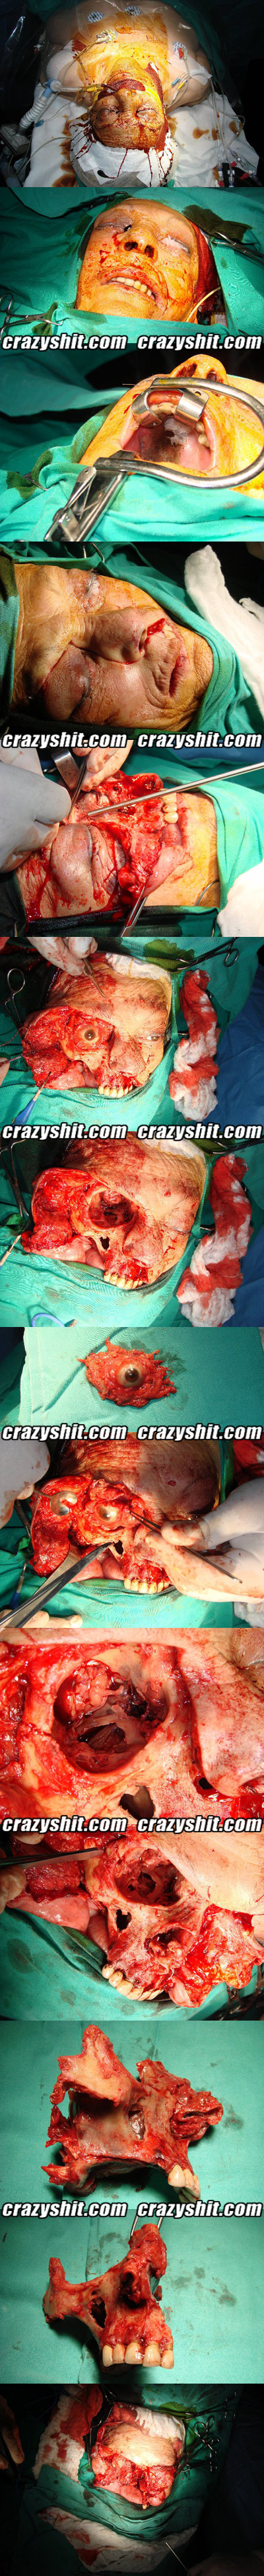 Deconstructive Face Surgery